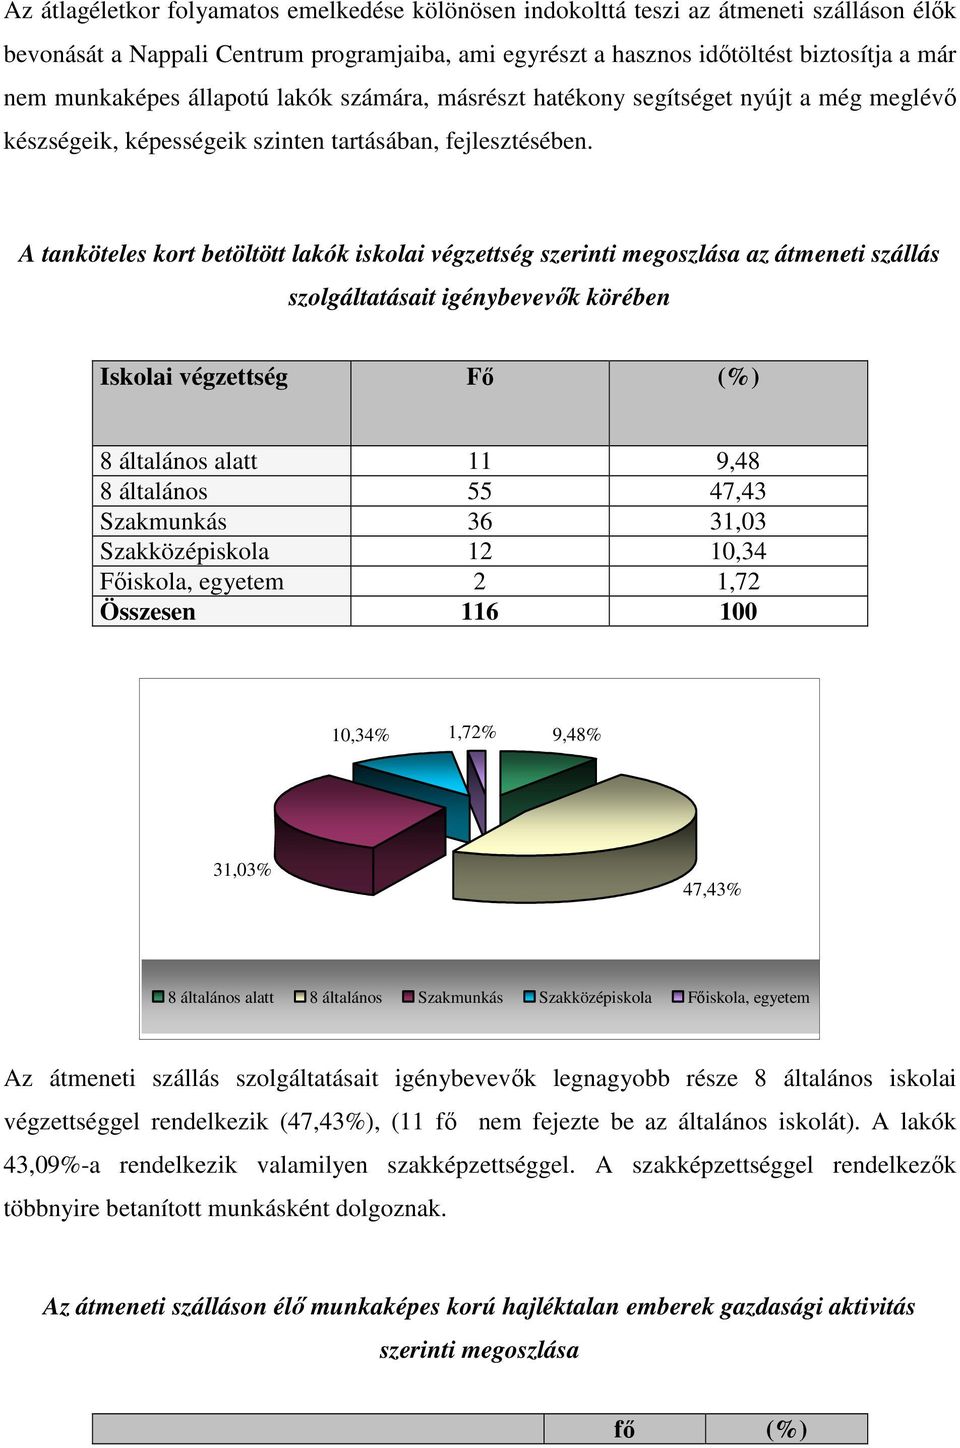 A tanköteles kort betöltött lakók iskolai végzettség szerinti megoszlása az átmeneti szállás szolgáltatásait igénybevevık körében Iskolai végzettség Fı (%) 8 általános alatt 11 9,48 8 általános 55